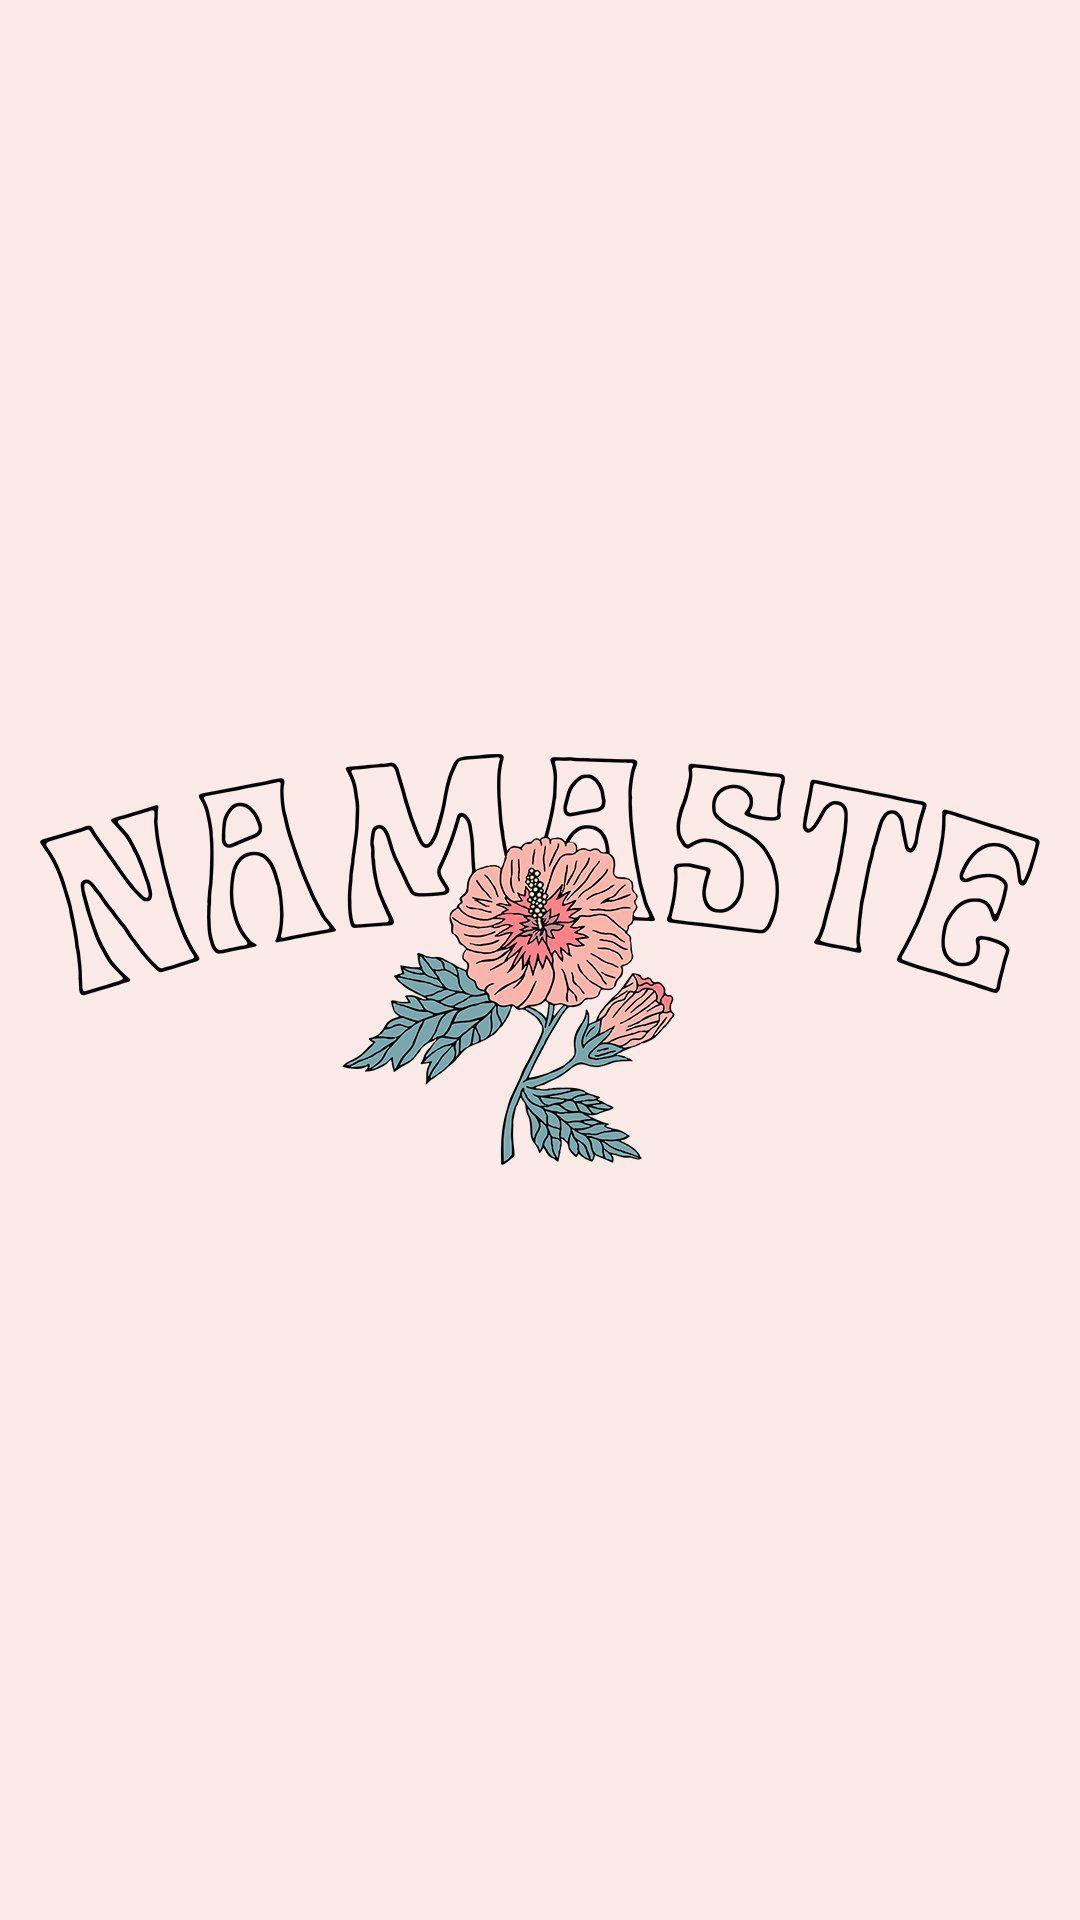 Free Namaste Wallpaper